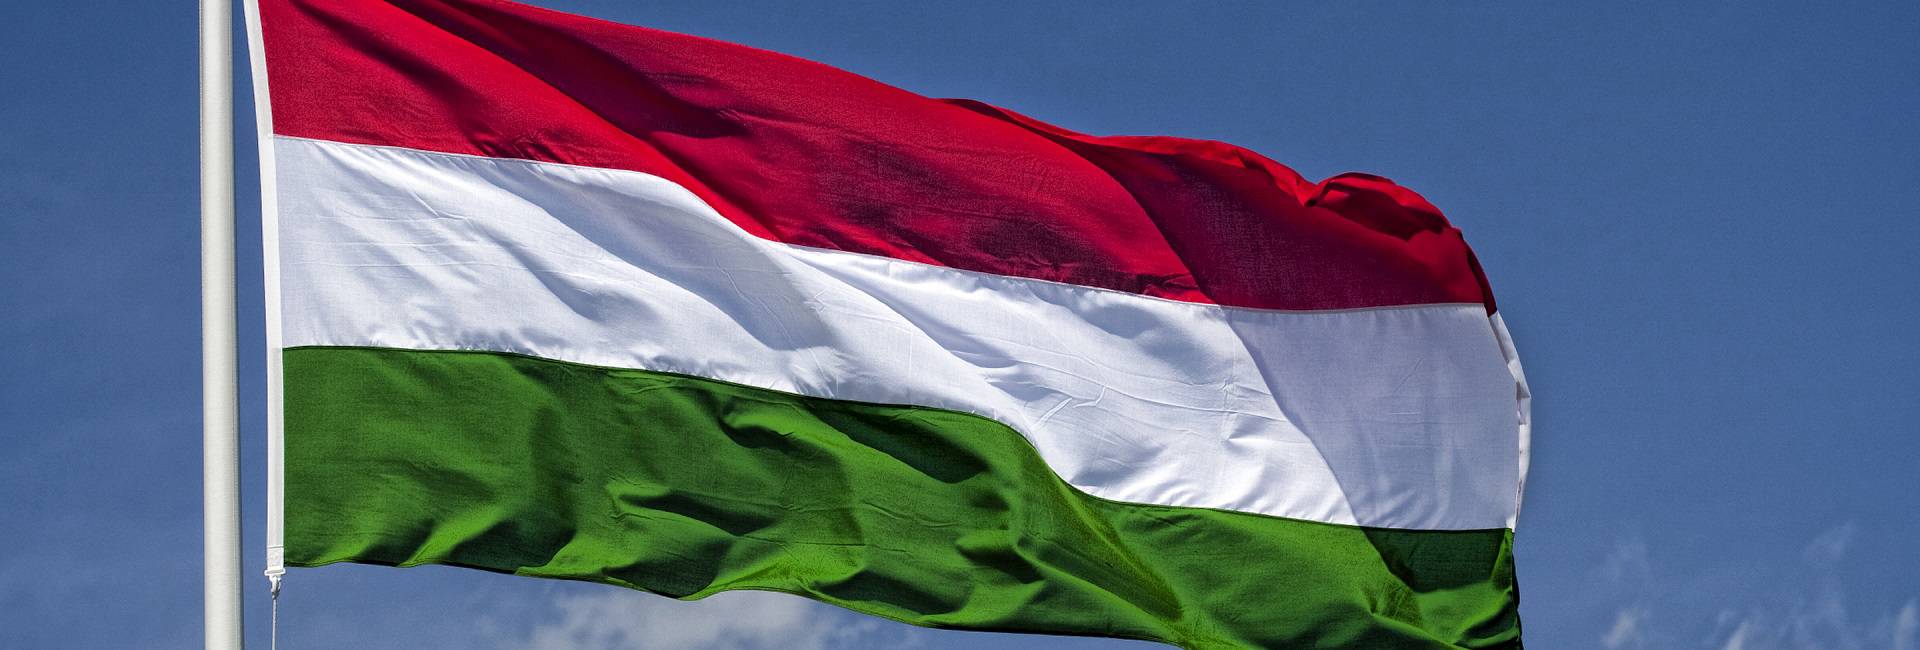 Если закарпатских венгров «могилизировать», то Будапешту не о чем беспокоиться?